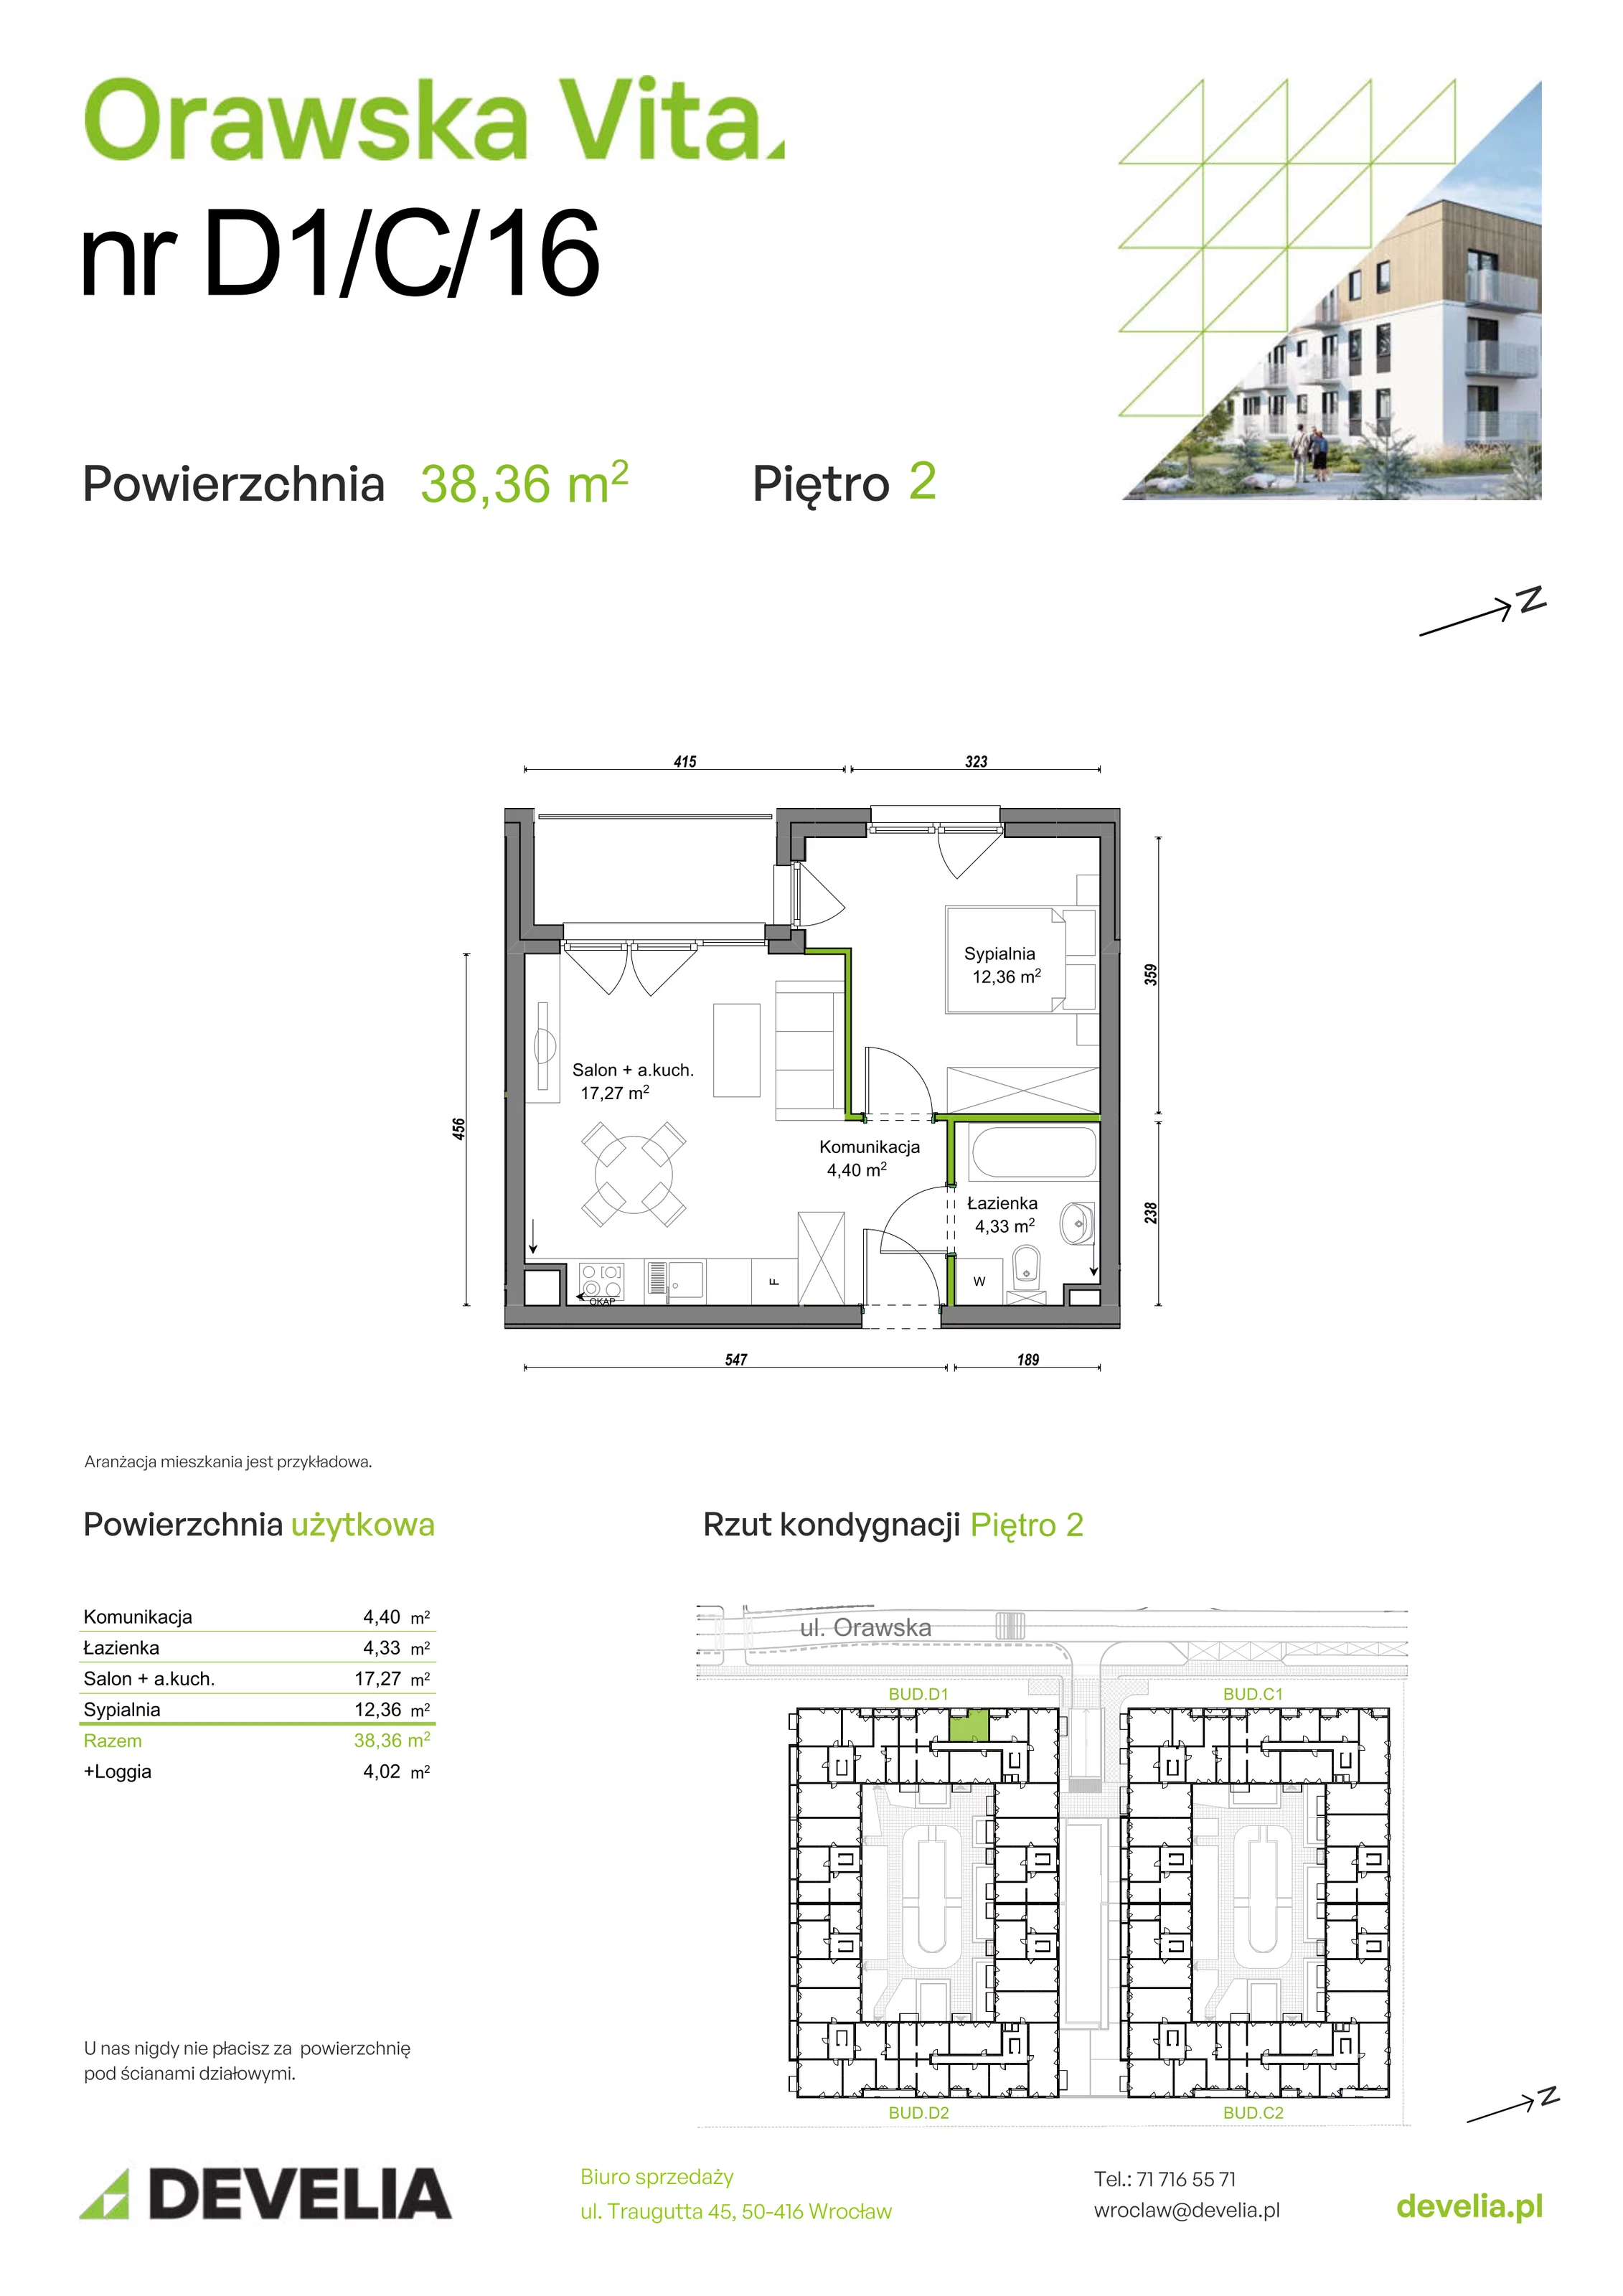 Mieszkanie 38,36 m², piętro 2, oferta nr D1/C/16, Orawska Vita, Wrocław, Ołtaszyn, Krzyki, ul. Orawska 73